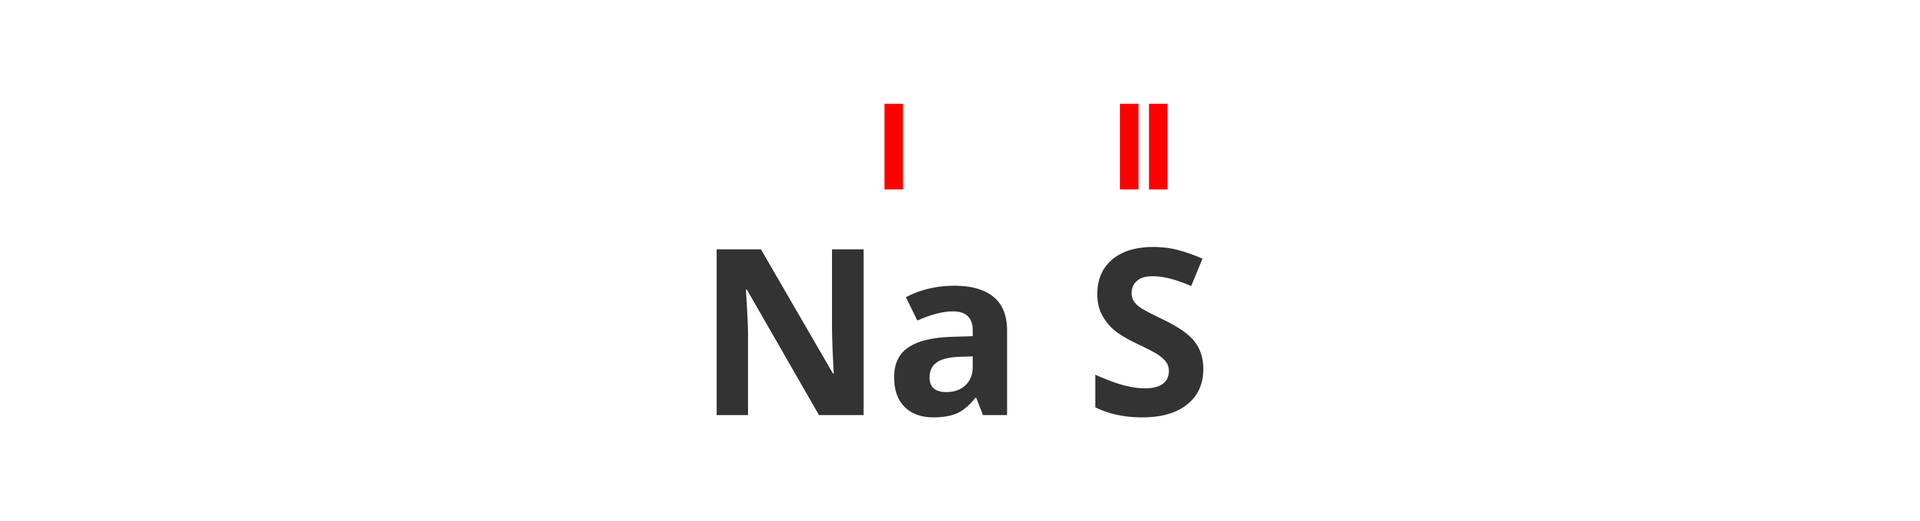 Na ilustracji widoczny jest zaczątek wzoru strukturalnego związku sodu i siarki. Nad symbolami pierwiastków czerwonym kolorem i rzymskimi cyframi wyróżniono wartościowość obydwu pierwiastków. Dla sodu jest to jeden, a dla siarki dwa.